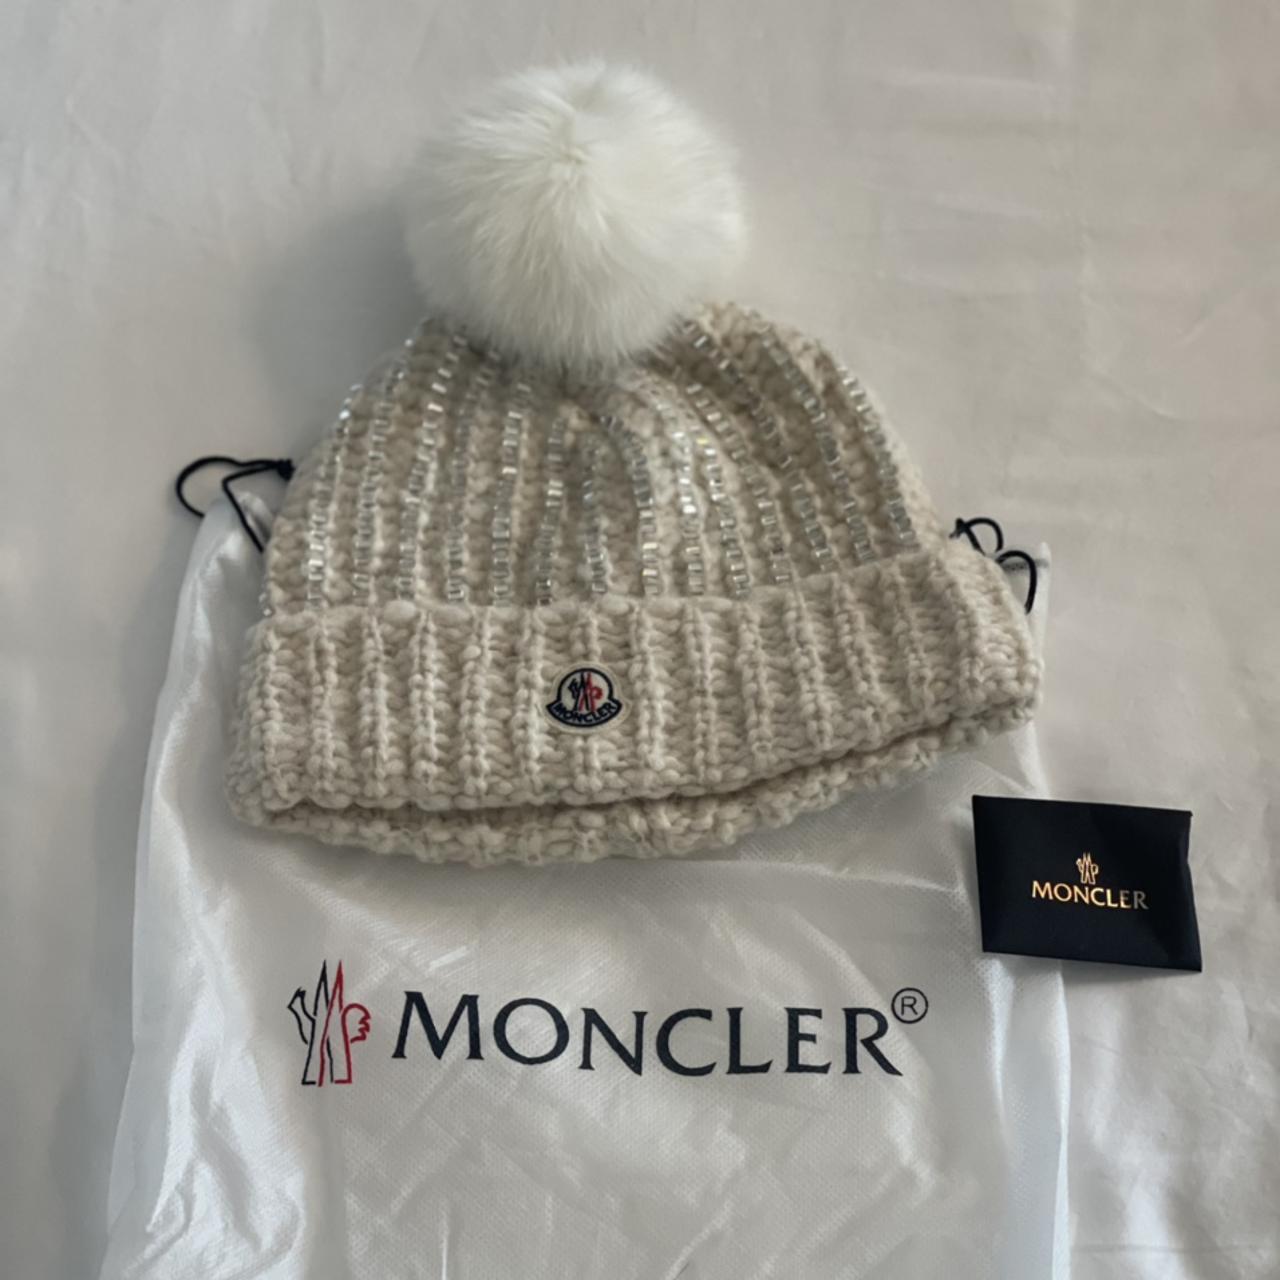 Moncler hat - Depop